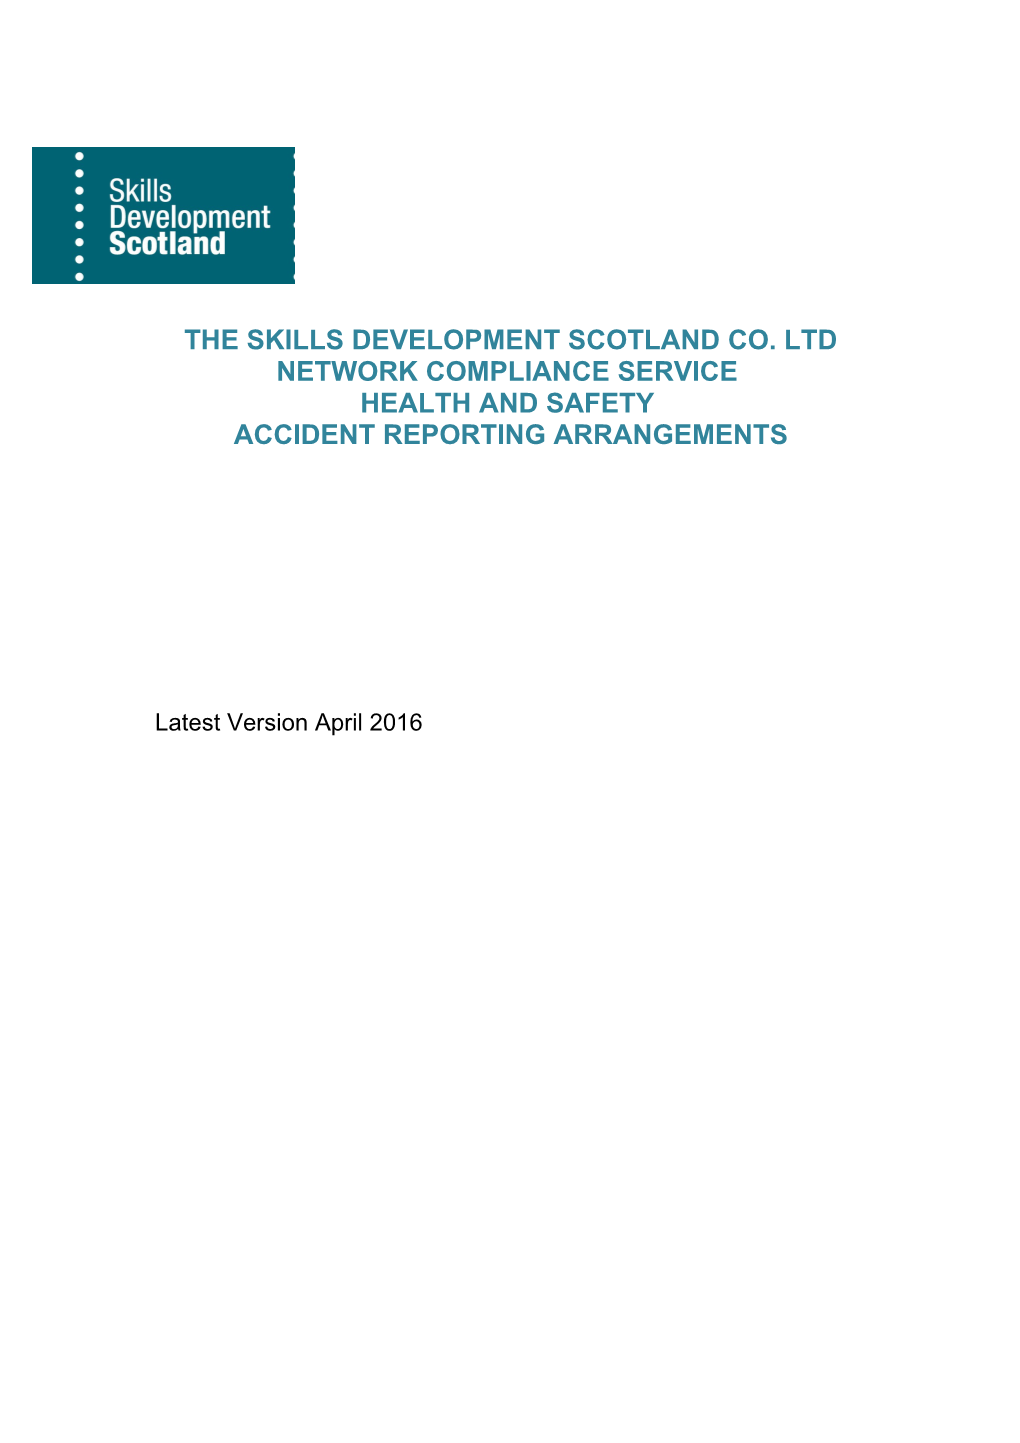 The Skills Development Scotland Co. Ltd